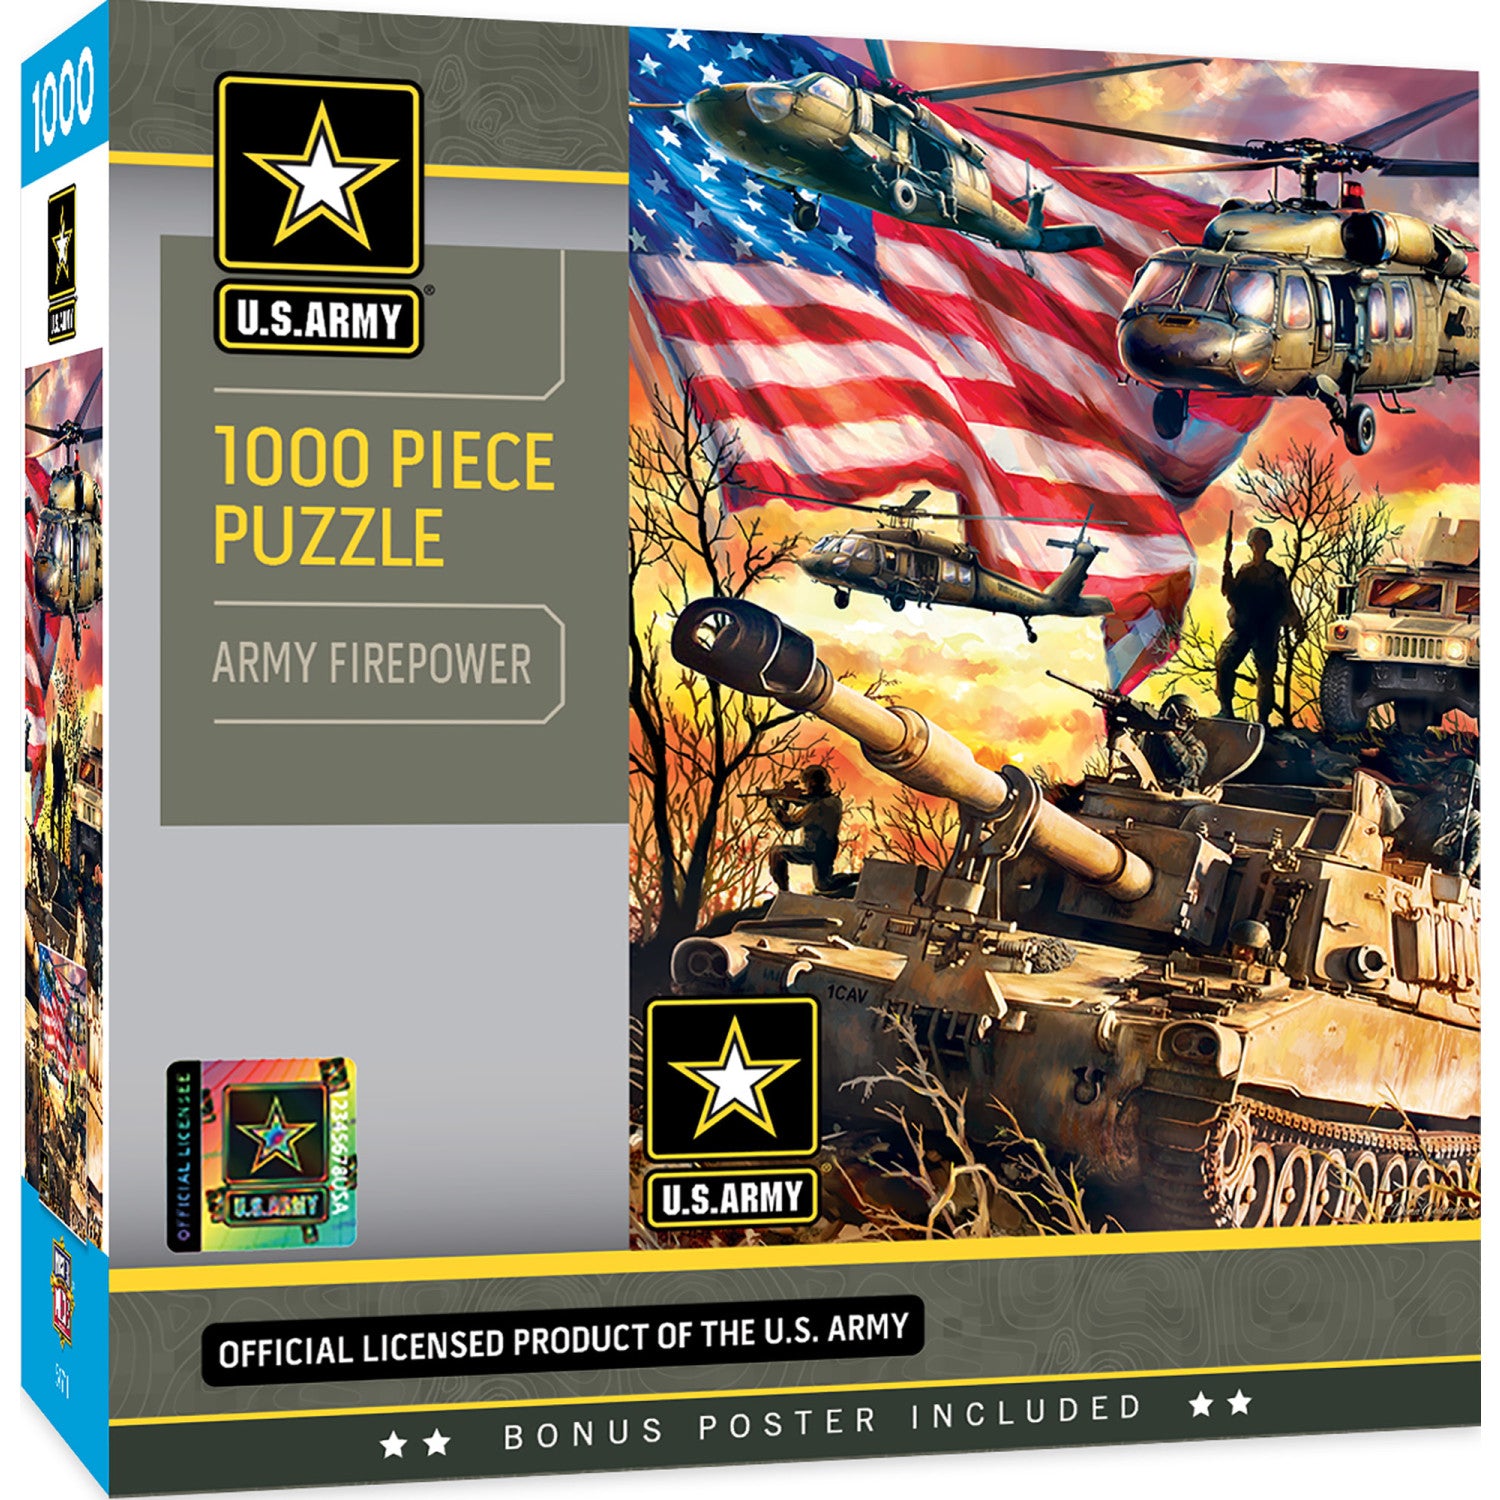 U.S. Army - Army Firepower 1000 Piece Puzzle